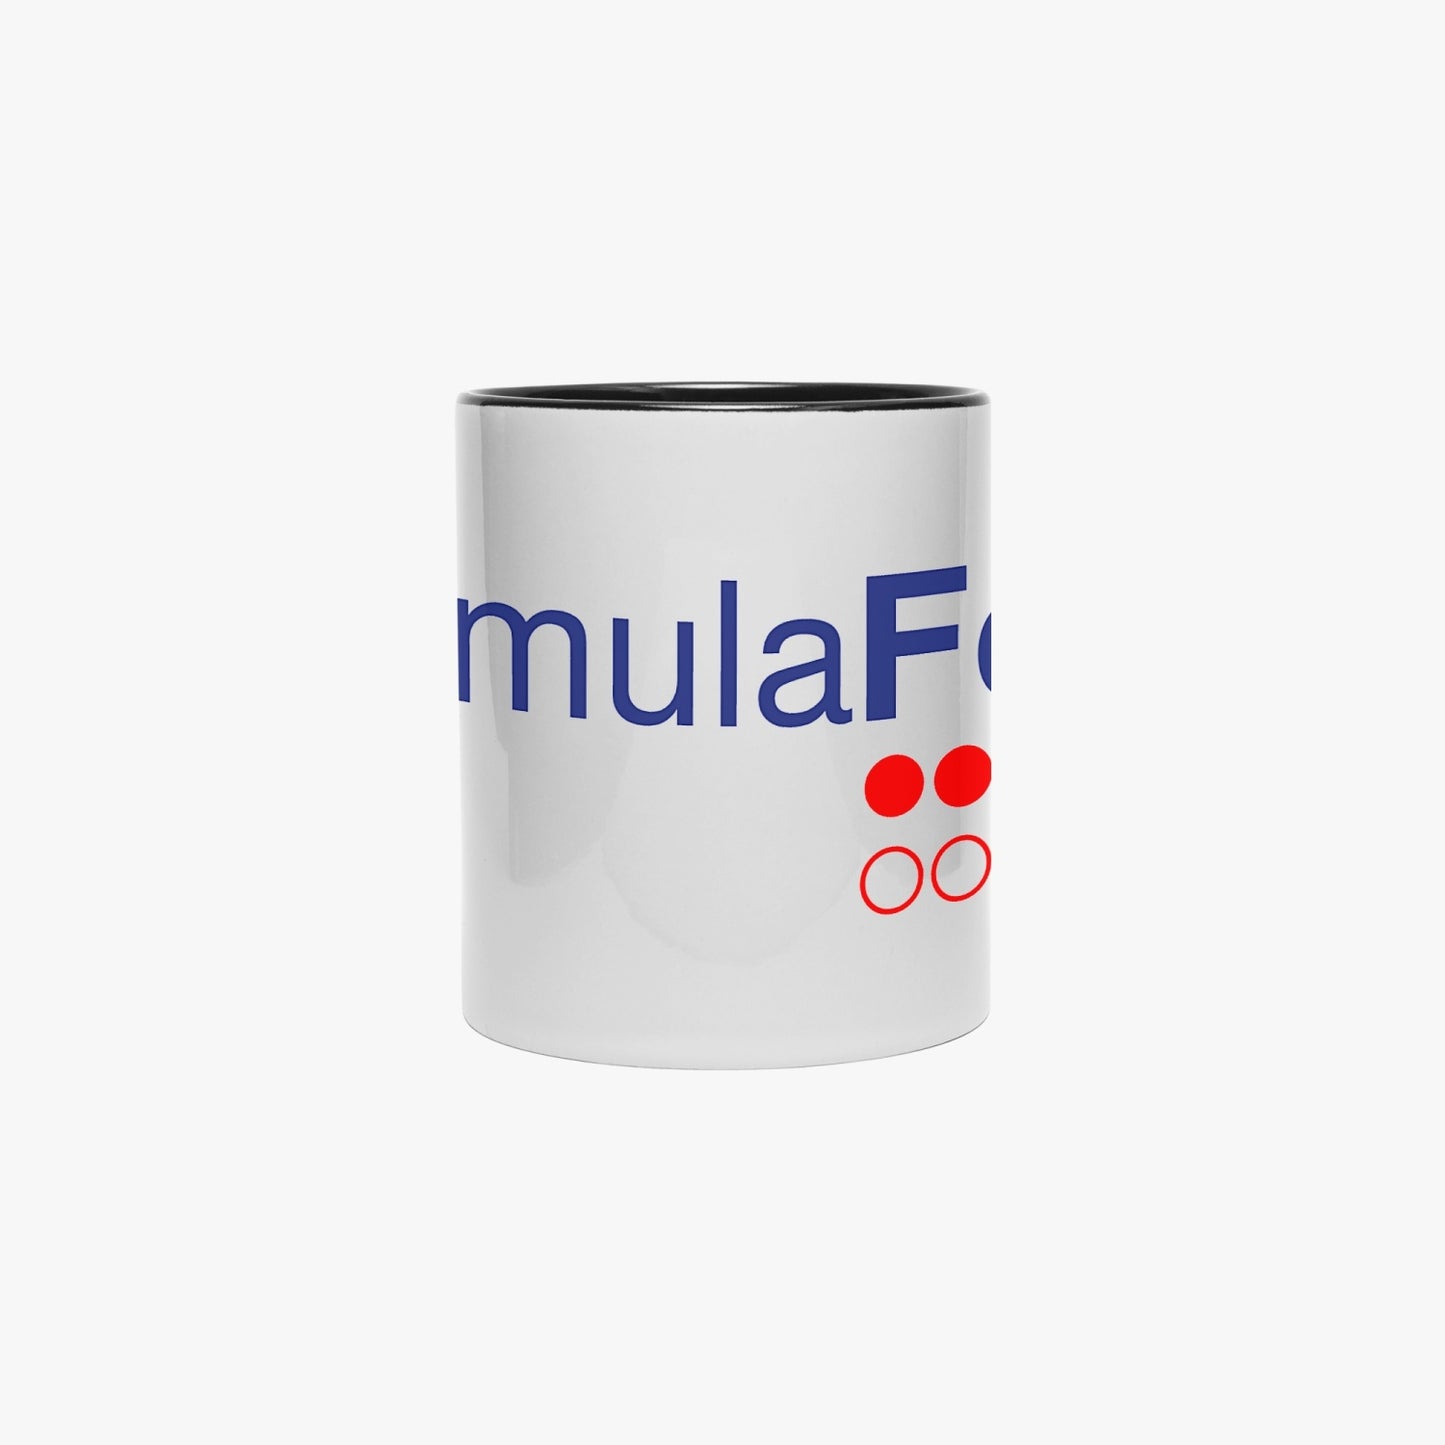 FORMULA FORD OFFICIAL Mug with Black Inside